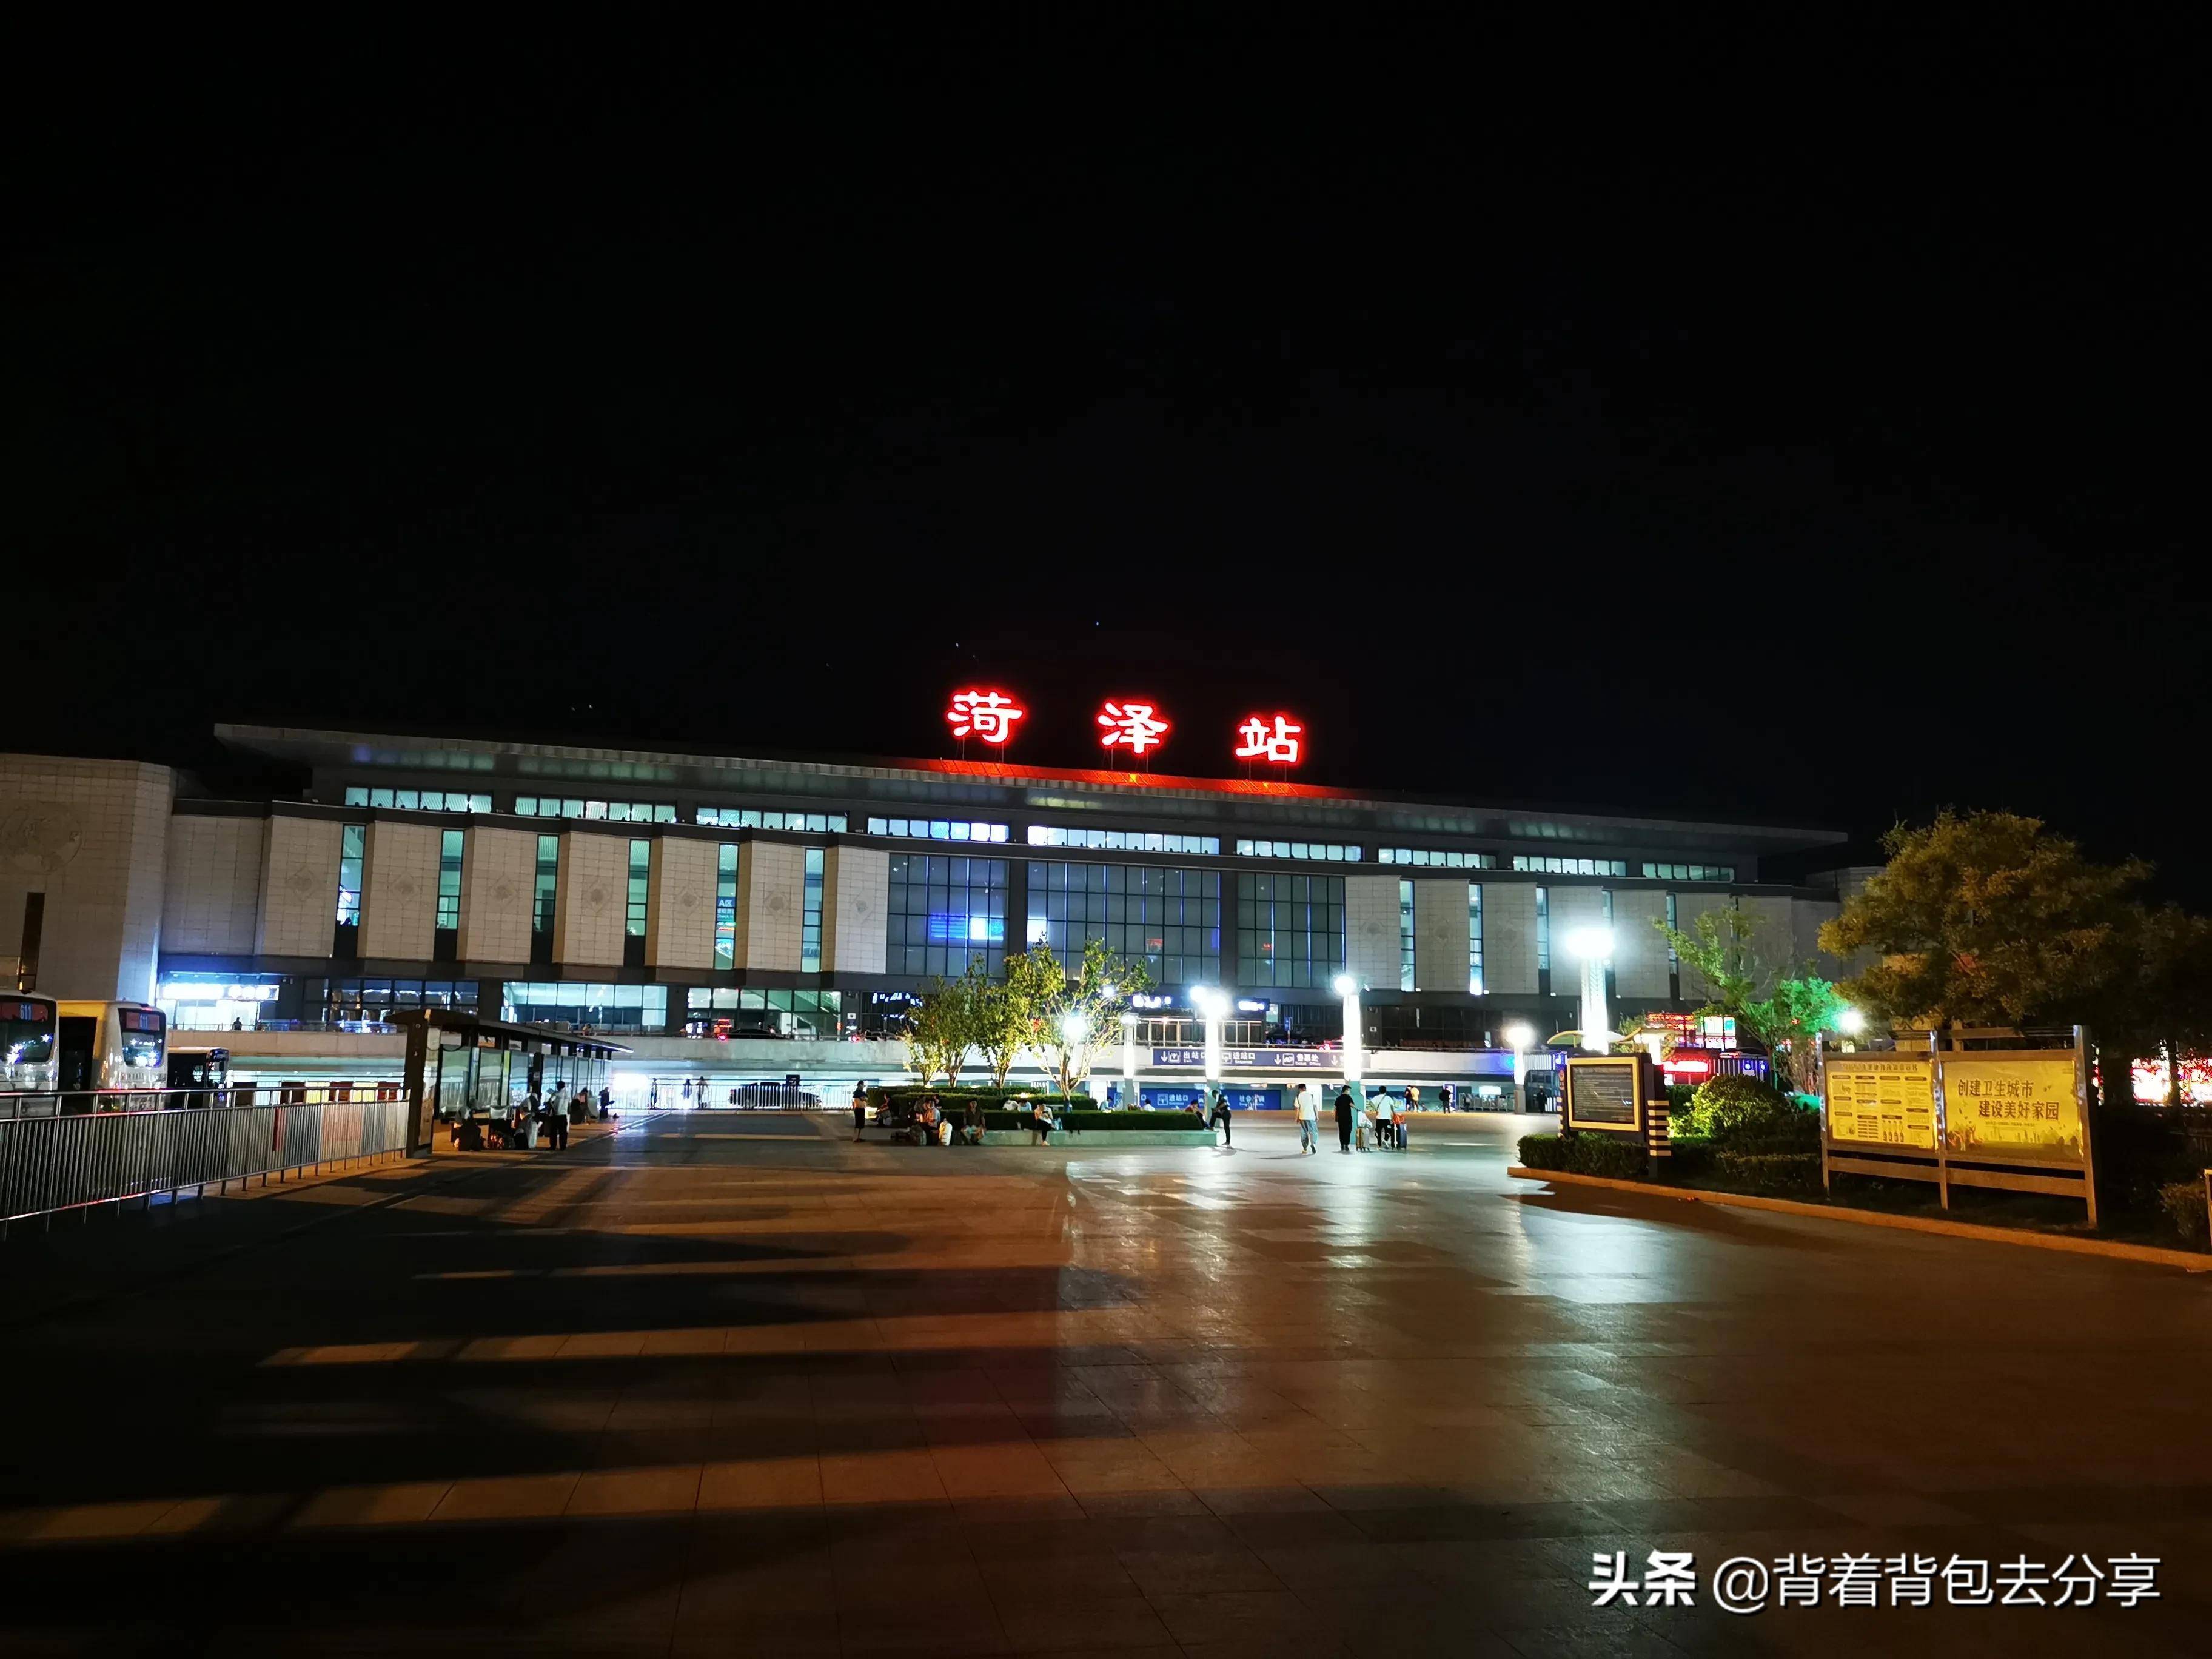 菏泽火车站,鲁西南最大的普速车站,现为国家一等站